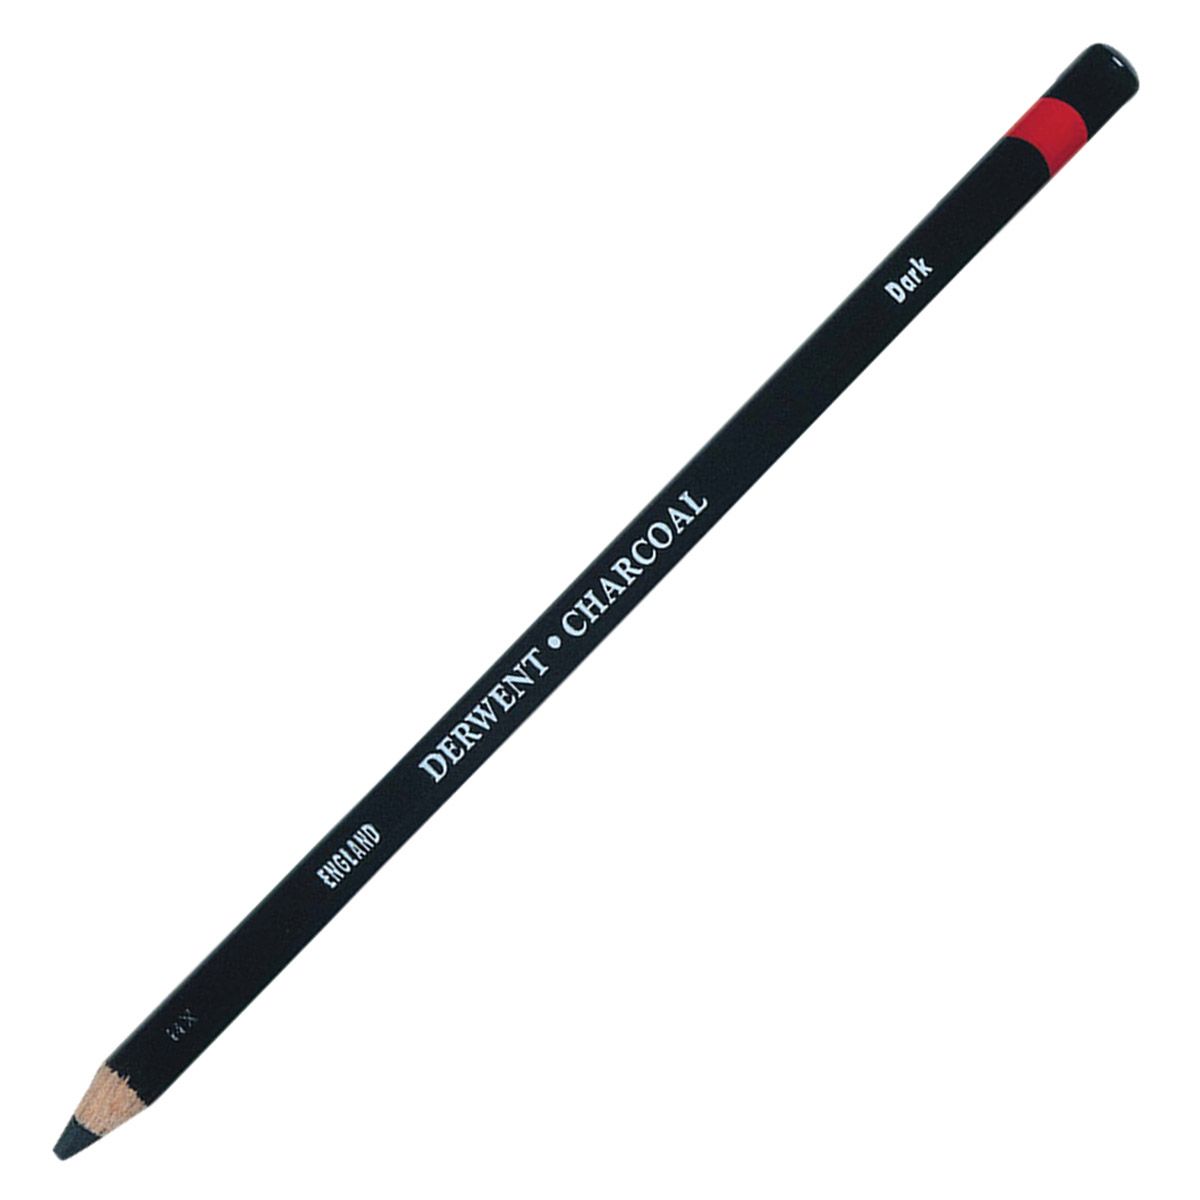 Derwent Charcoal Pencil - Dark